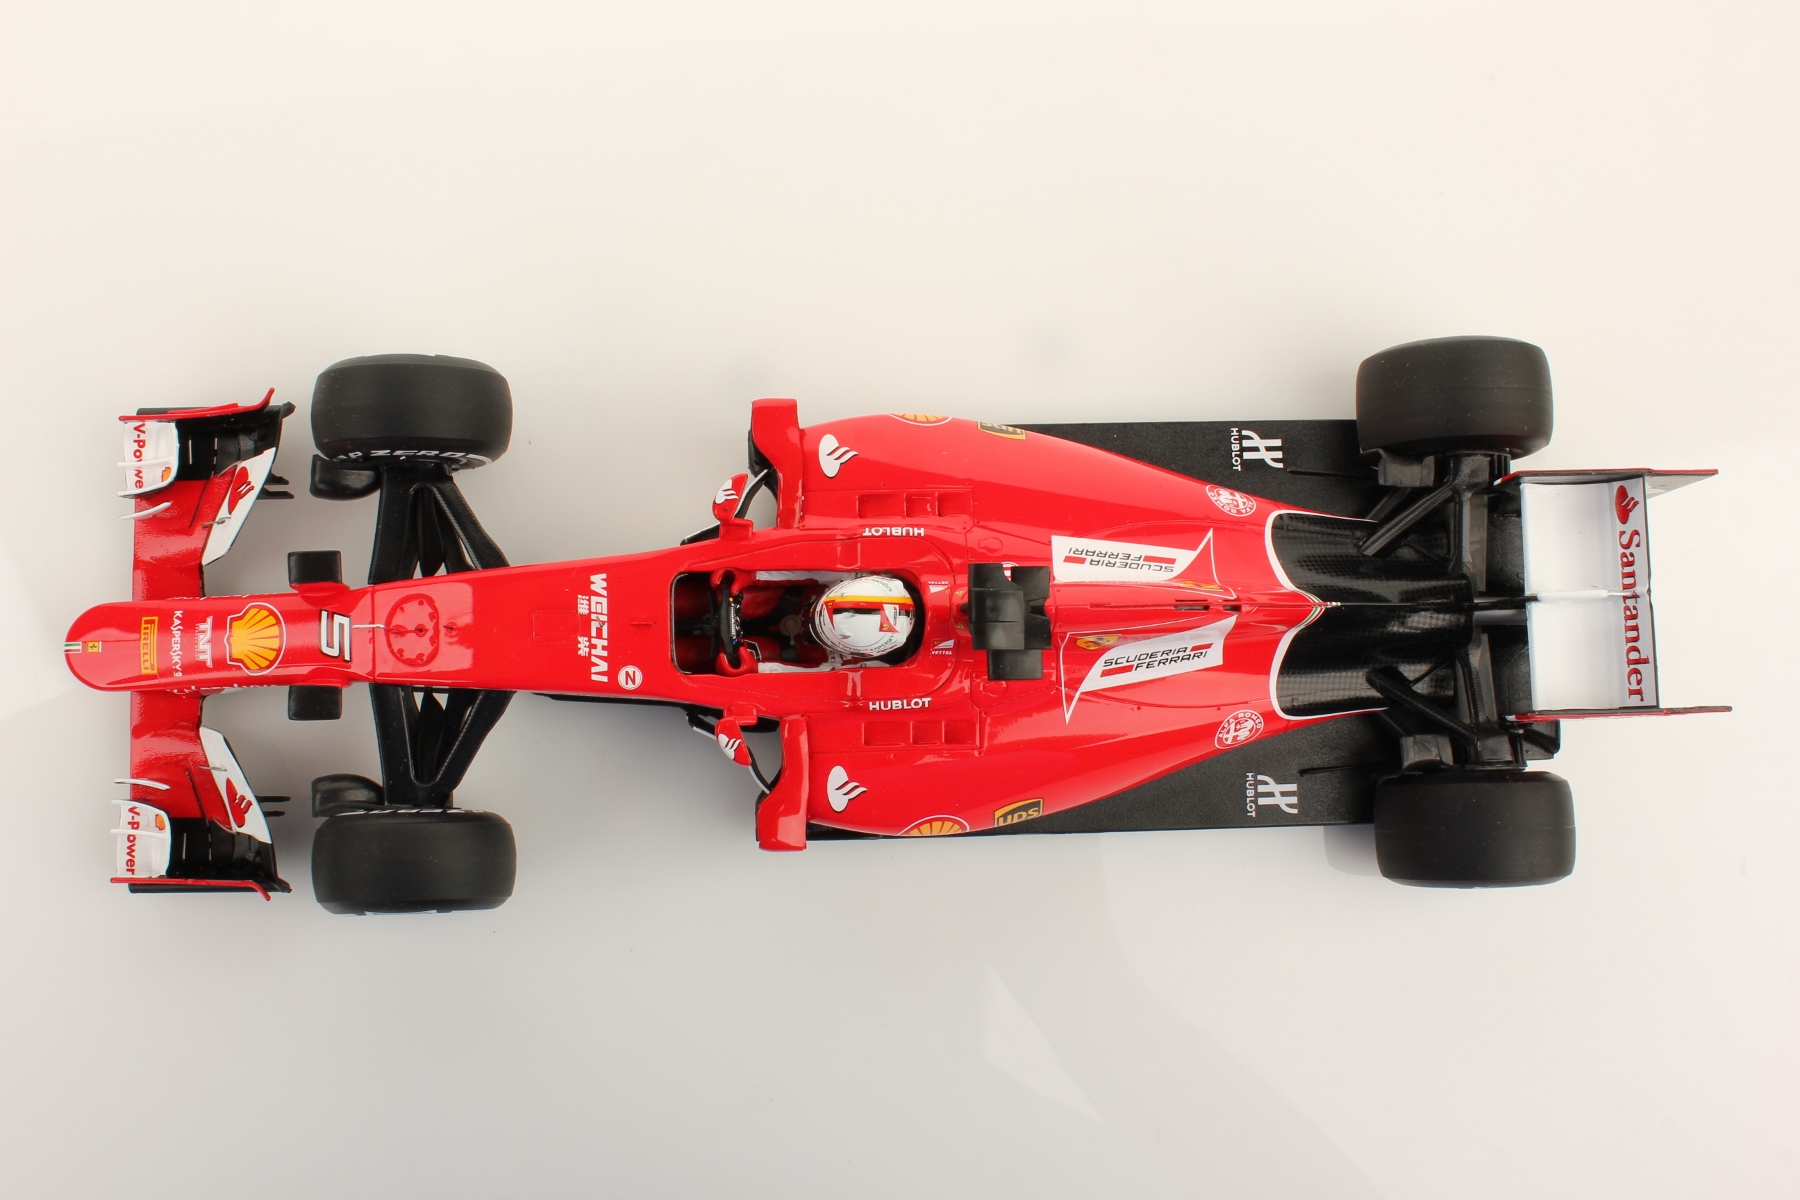 Ferrari SF15-T Vettel Malaysia 2015 1:18 - Looksmart Models